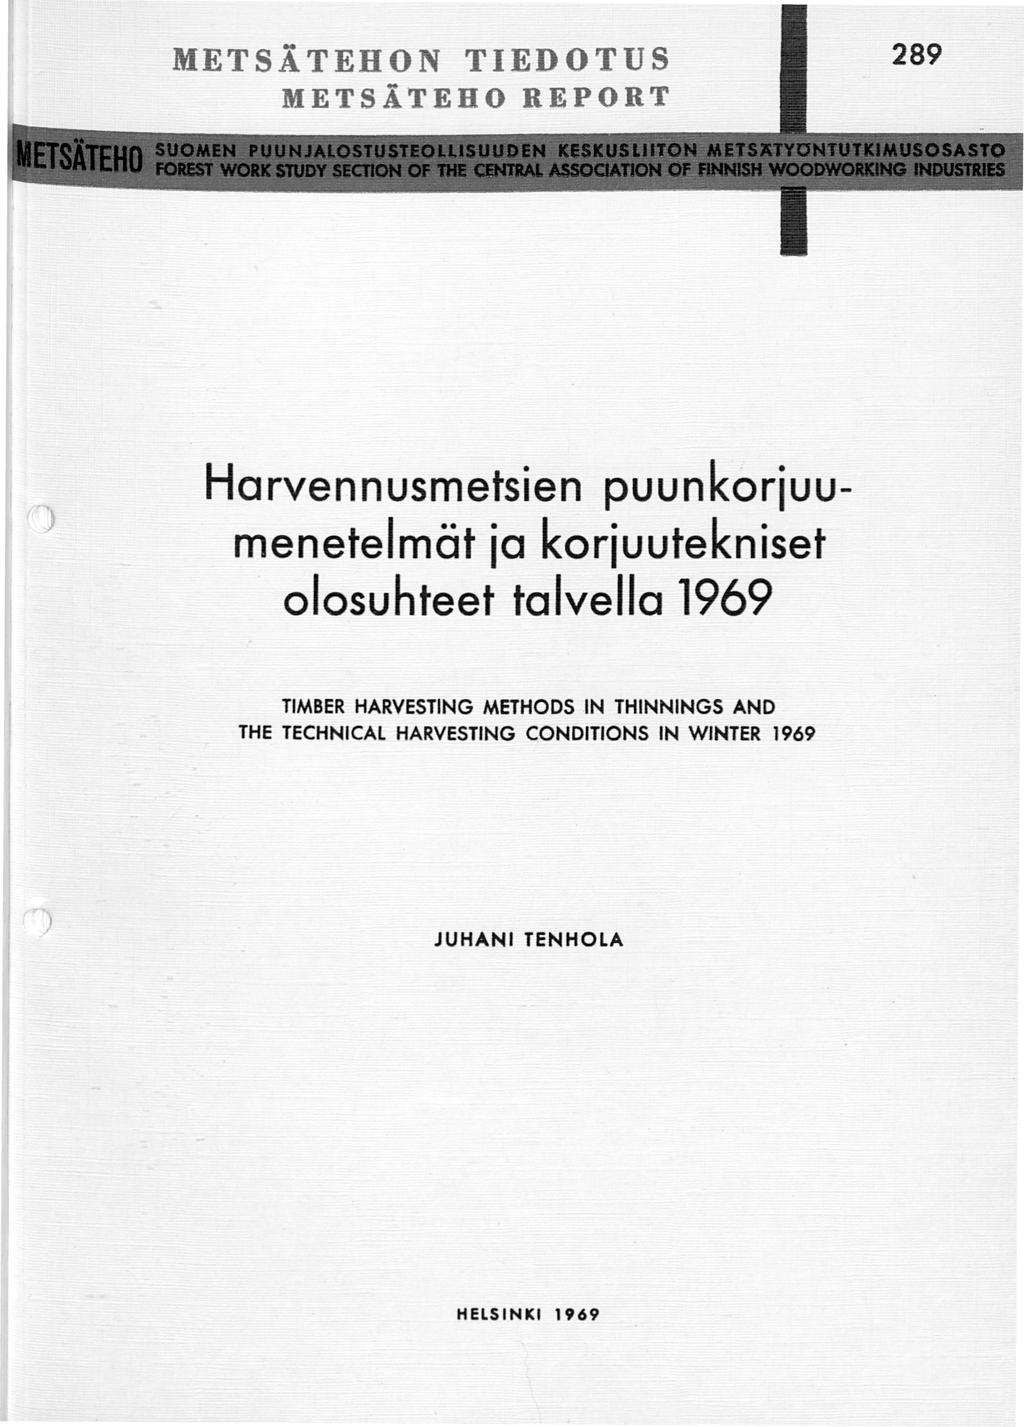 METSÄ TEHON TIEDOTUS METSÄTEHO REPORT Harvennusmetsien puunkoriuumenetelmät ia koriuutekniset olosuhteet talvella 1969